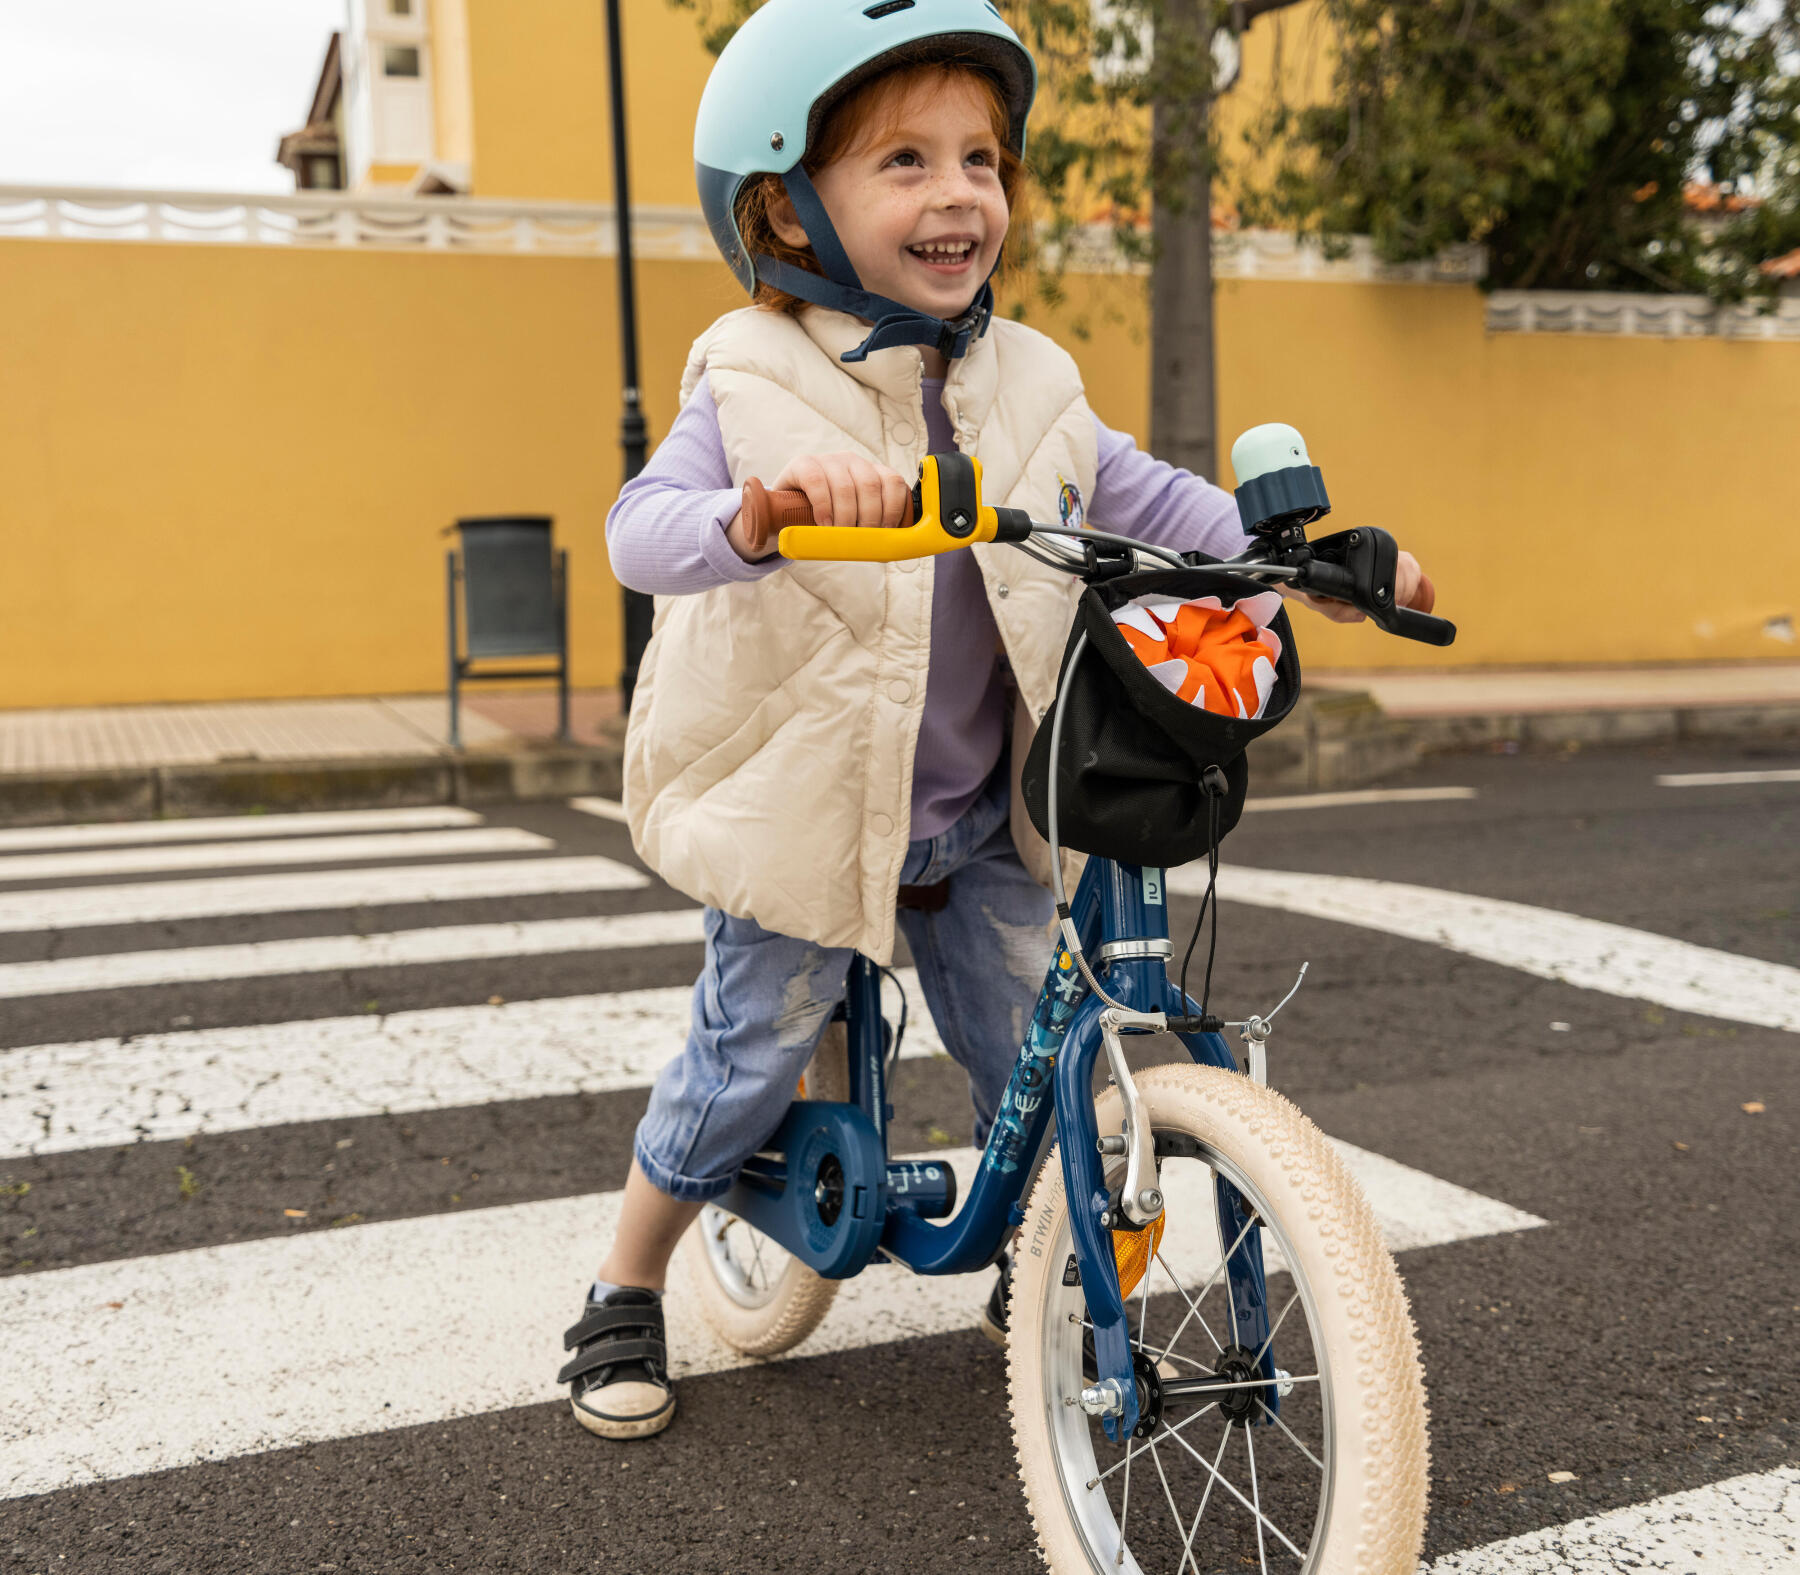 Par où commencer quand vos enfants apprennent le vélo